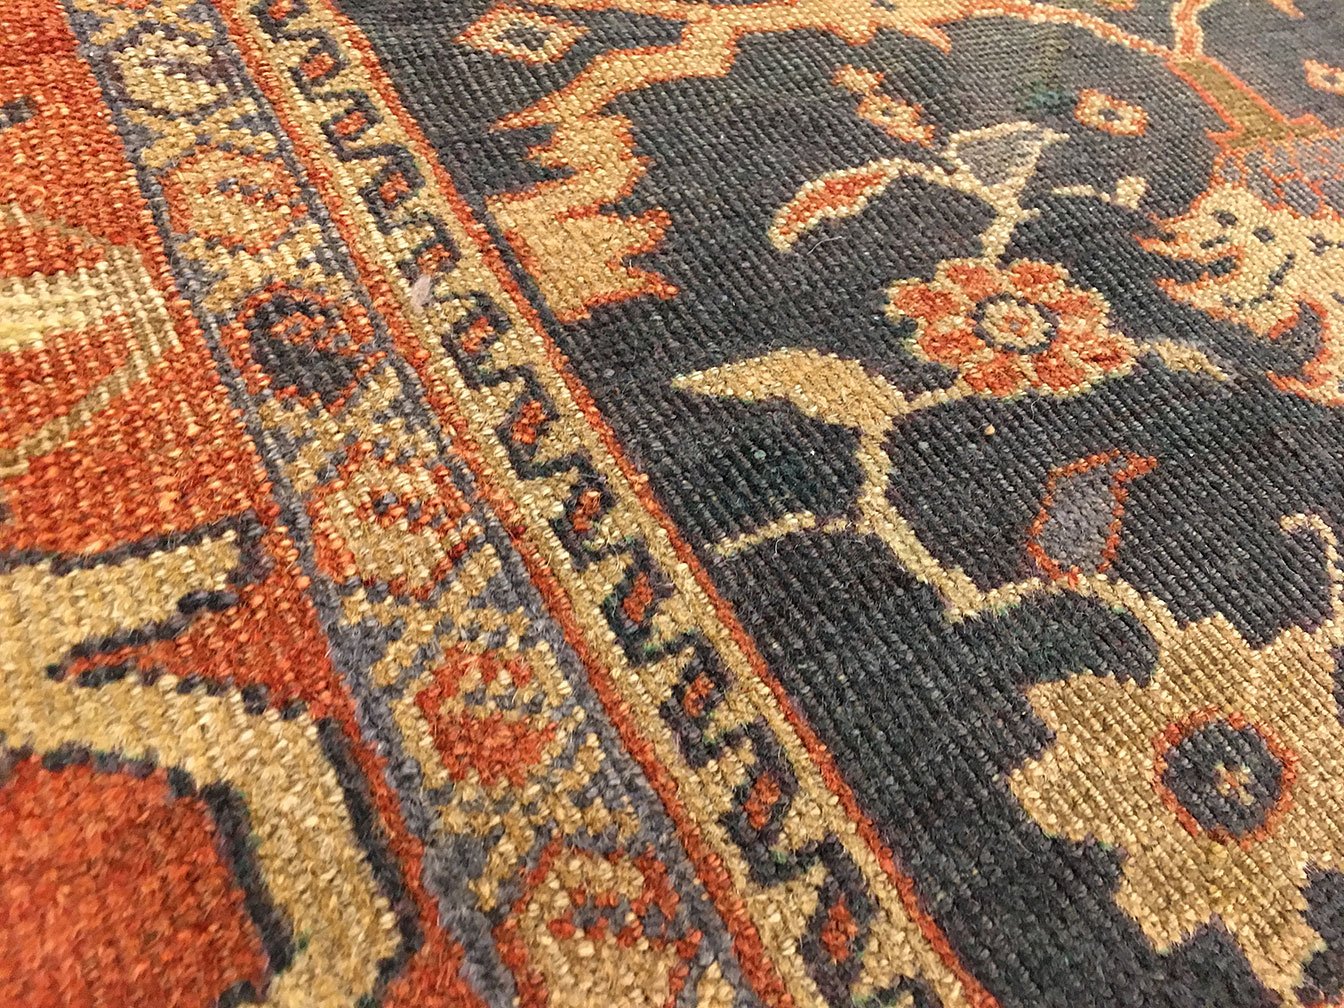 Antique sultan abad Carpet - # 50105